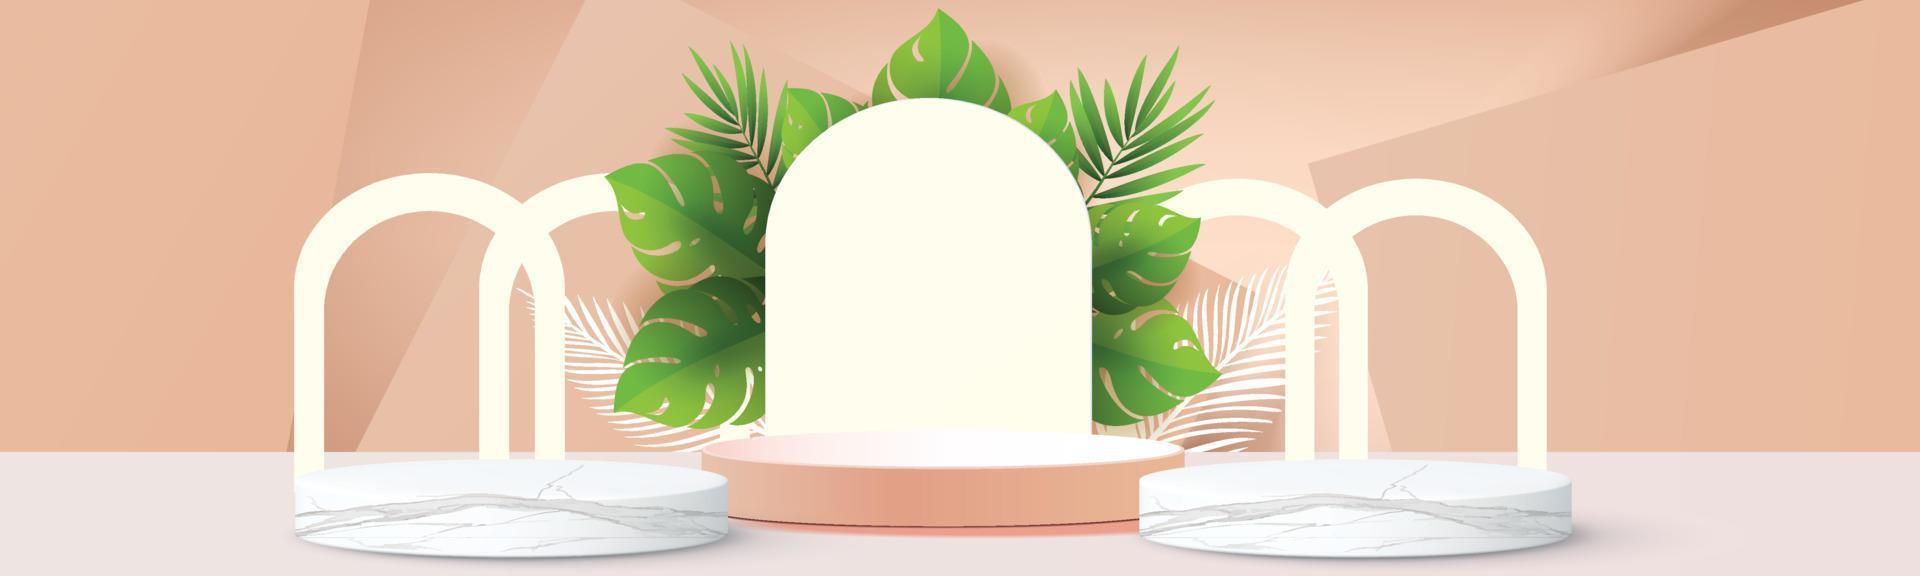 3d geometrico podio mockup foglia tropicale concetto netural per vetrina sfondo verde astratto scena minima presentazione del prodotto illustrazione vettoriale